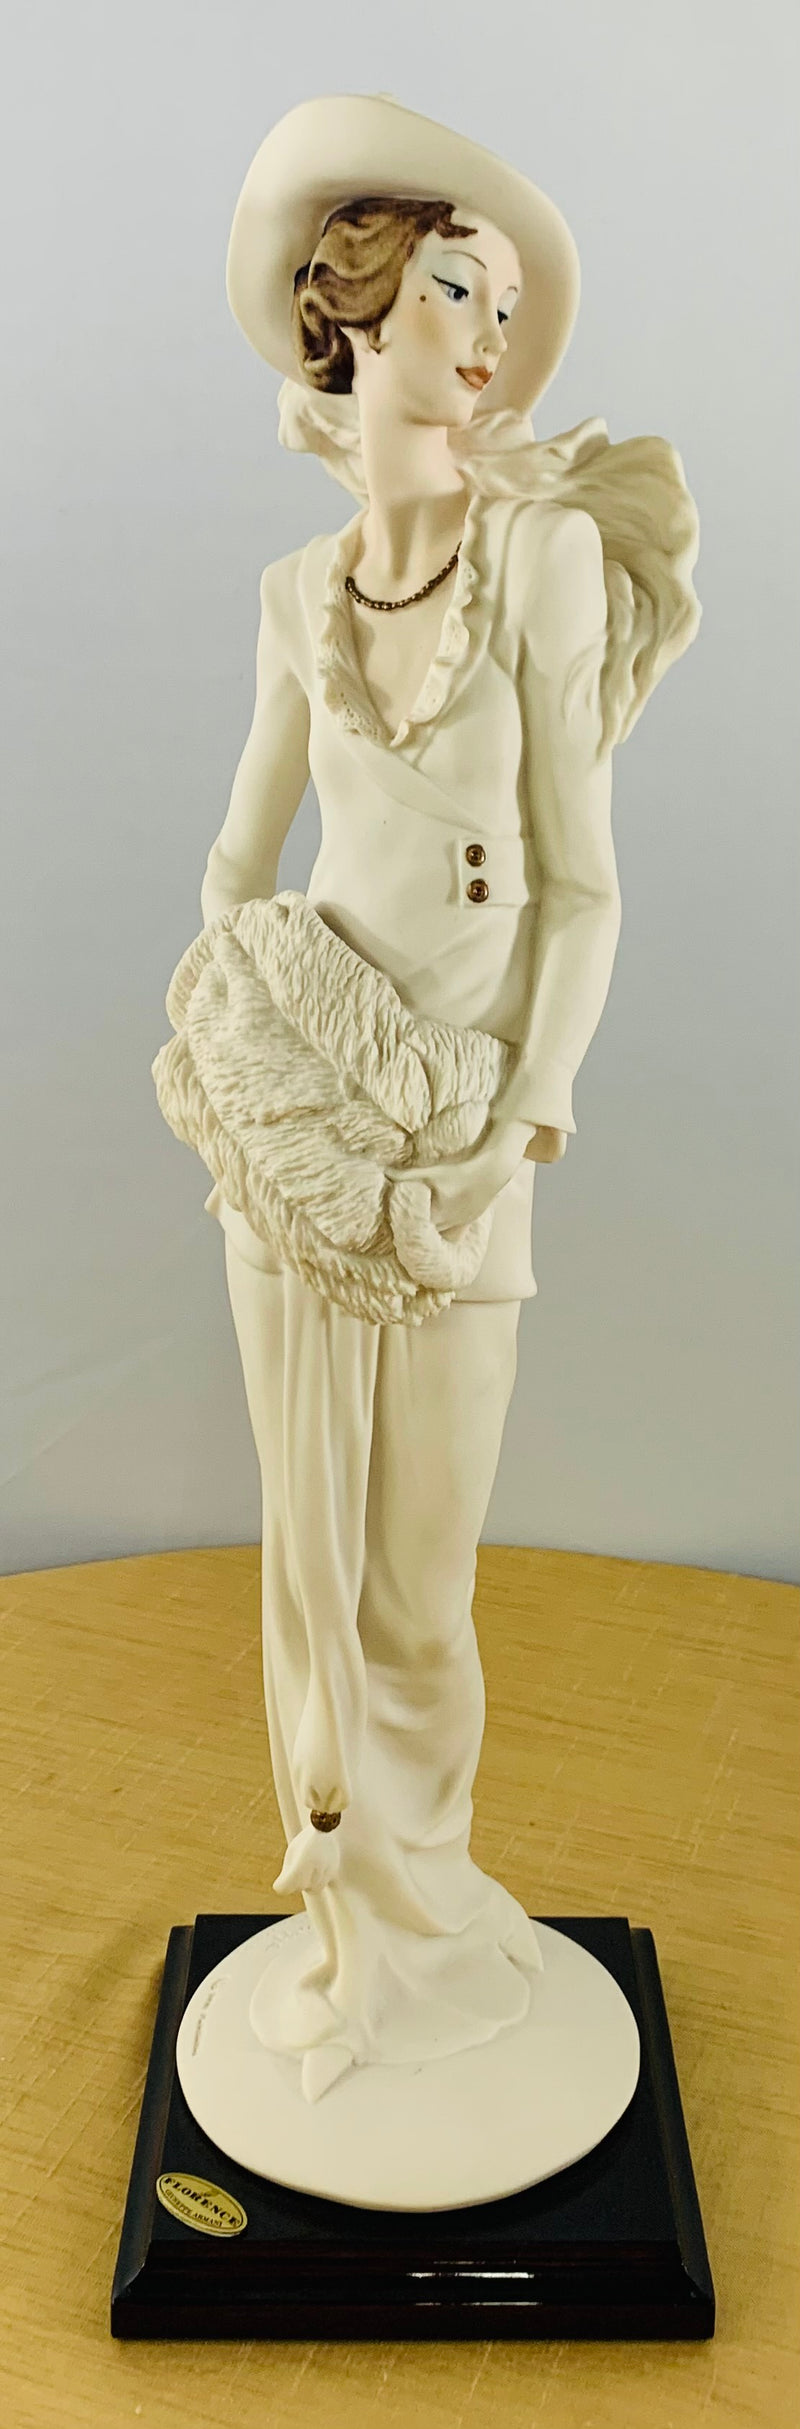 A Rare Giuseppe Armani Figurine